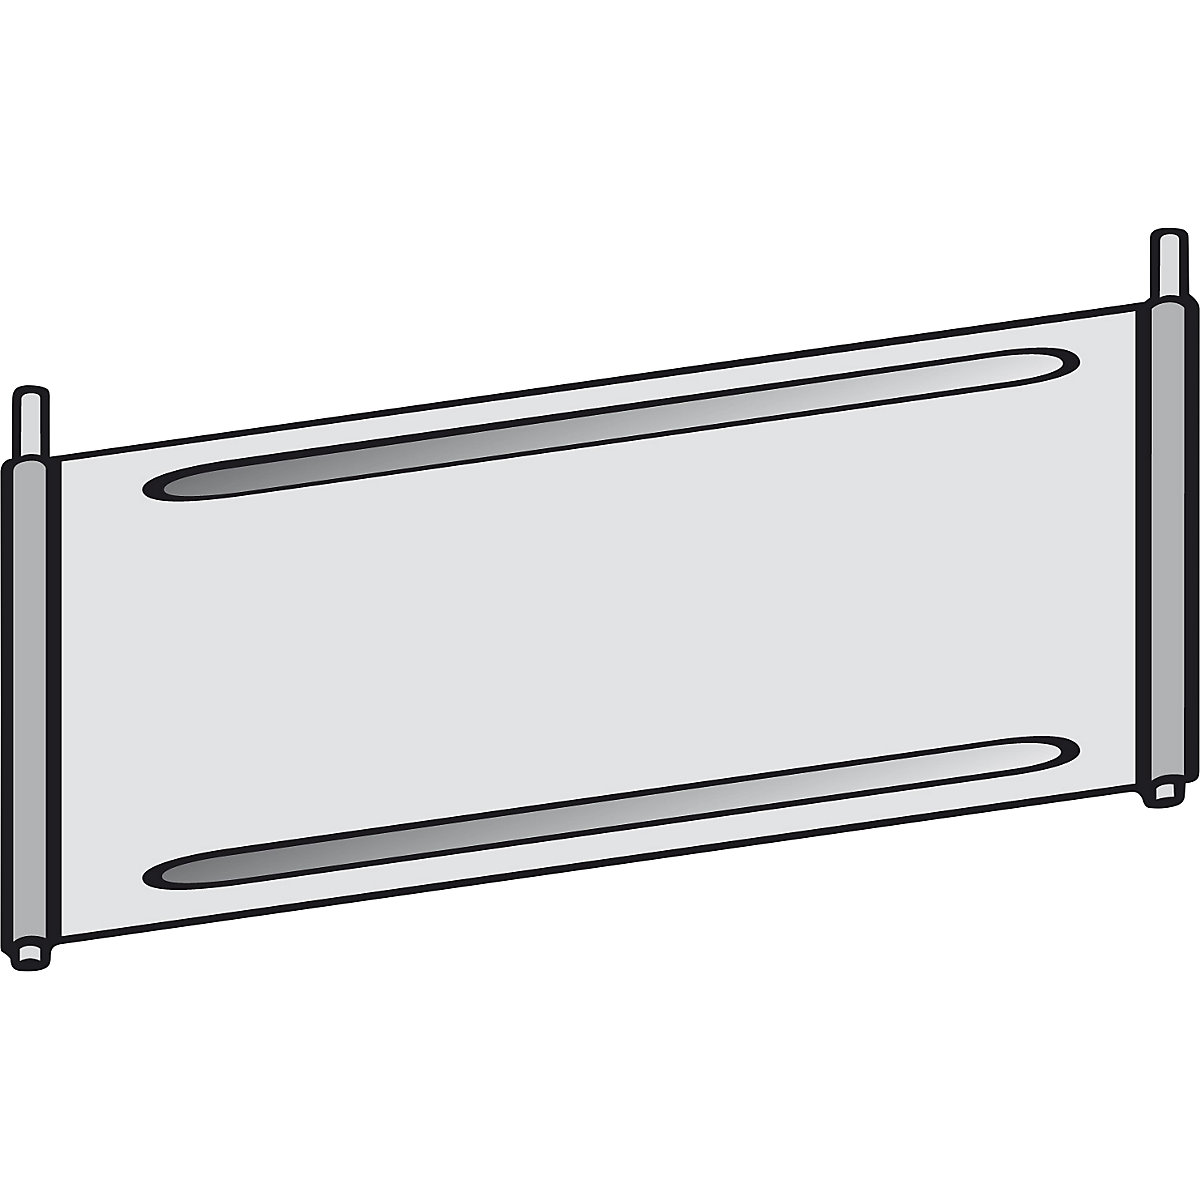 Shelf partition for compartment shelf unit – hofe